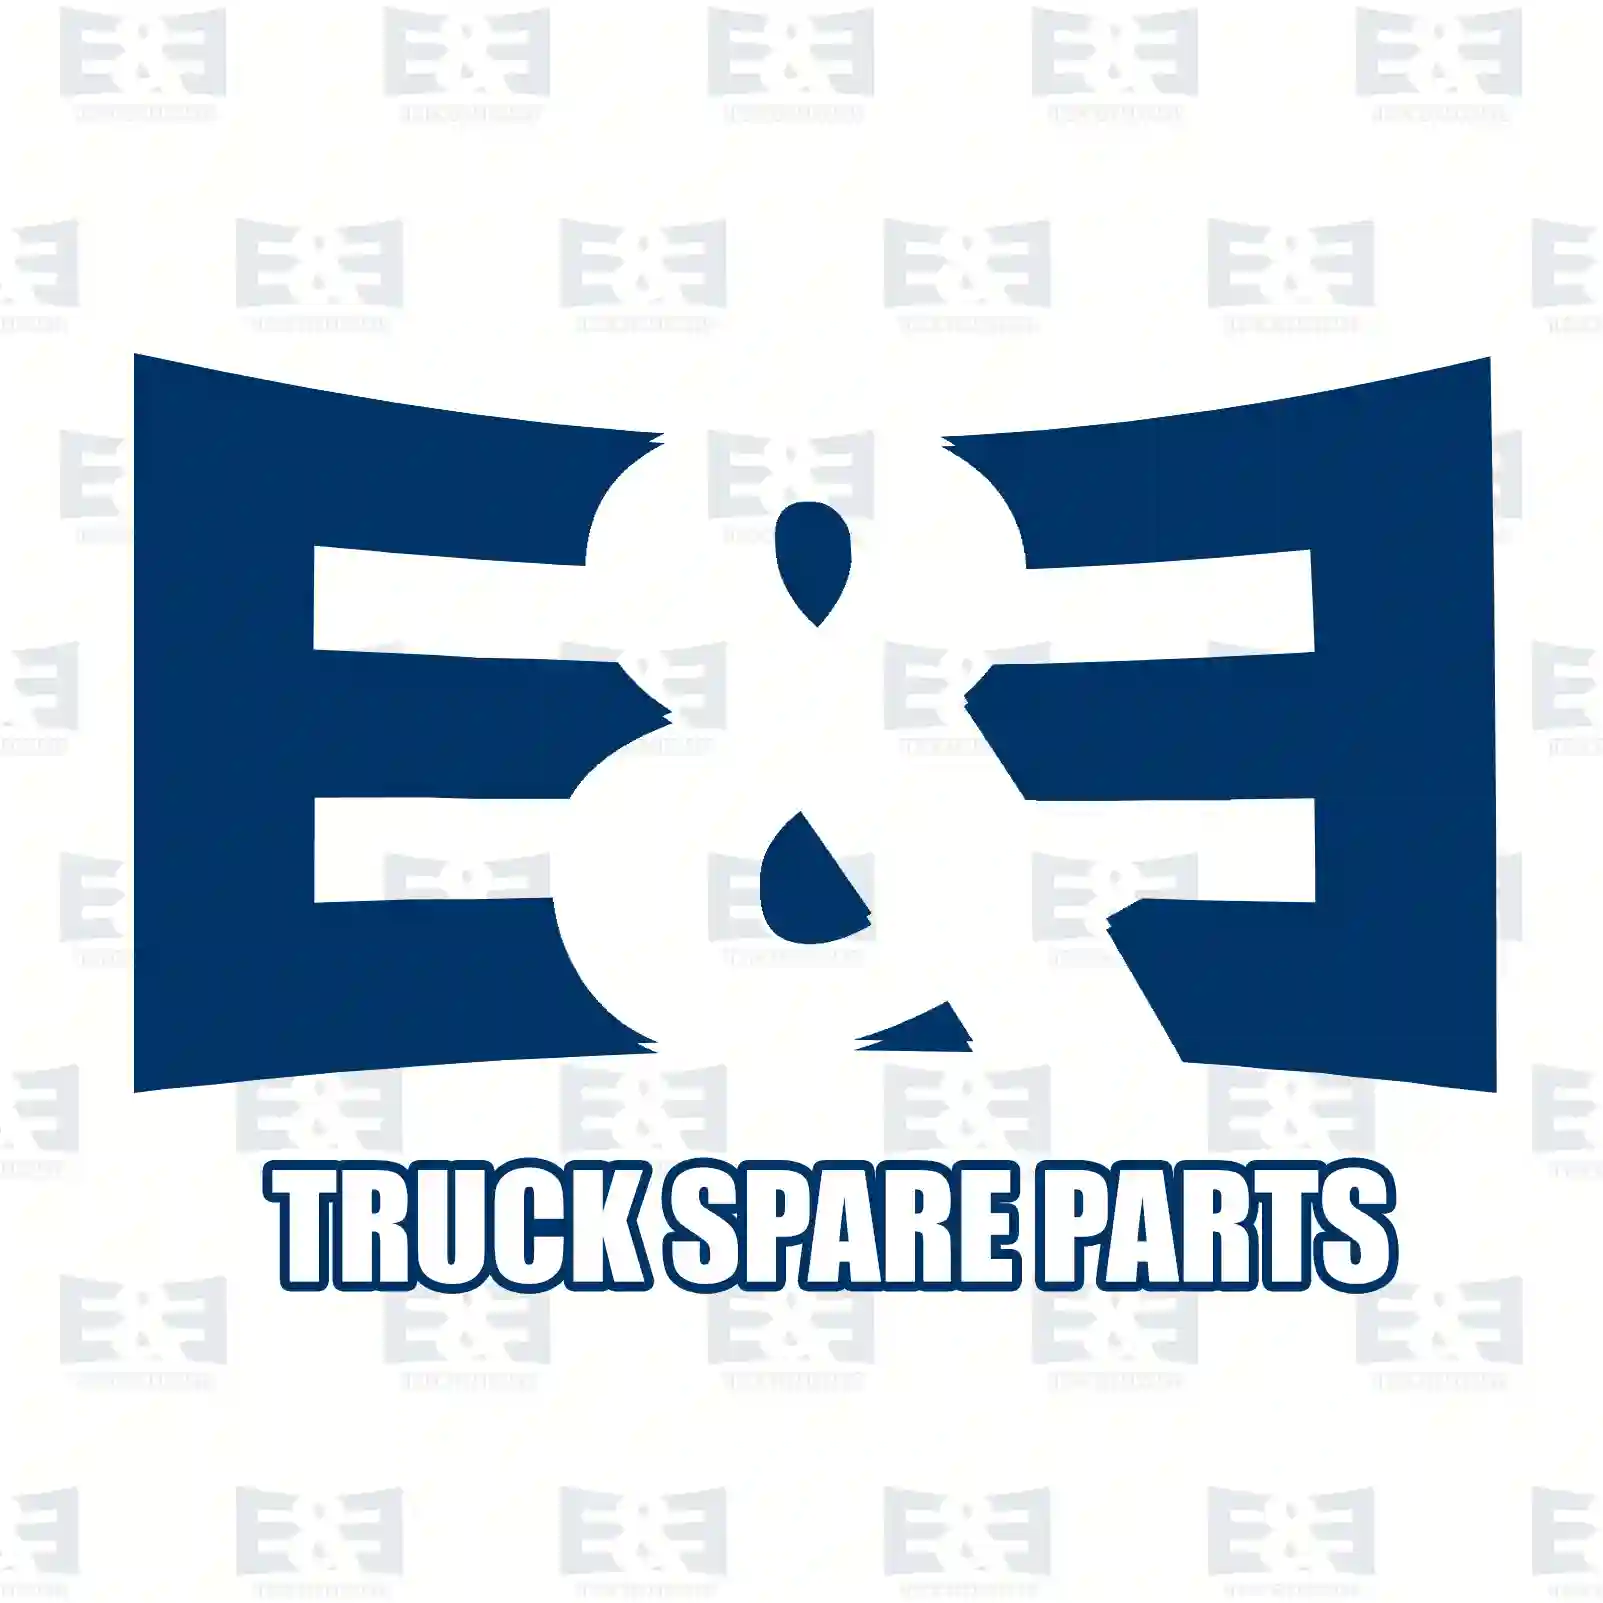 Cabin tilt cylinder, 2E2275675, 7422070294, 7422302639, , , , , , , ||  2E2275675 E&E Truck Spare Parts | Truck Spare Parts, Auotomotive Spare Parts Cabin tilt cylinder, 2E2275675, 7422070294, 7422302639, , , , , , , ||  2E2275675 E&E Truck Spare Parts | Truck Spare Parts, Auotomotive Spare Parts